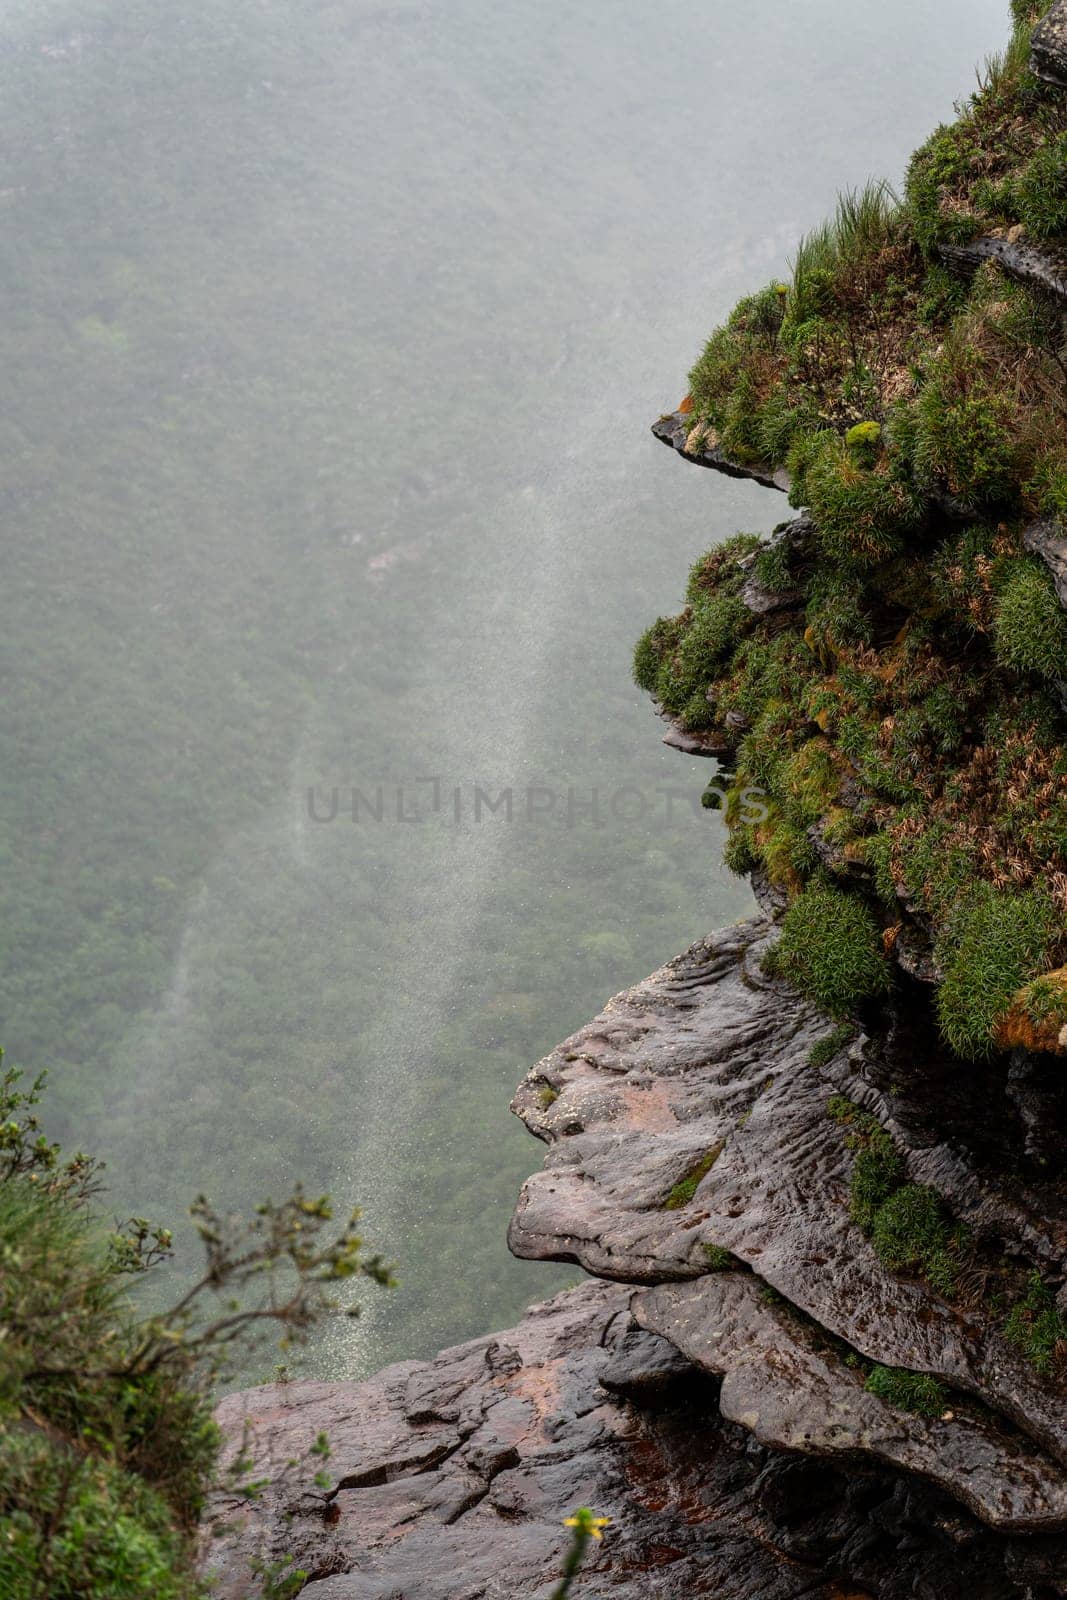 Misty Mountain Waterfall Edge with Windswept Spray by FerradalFCG